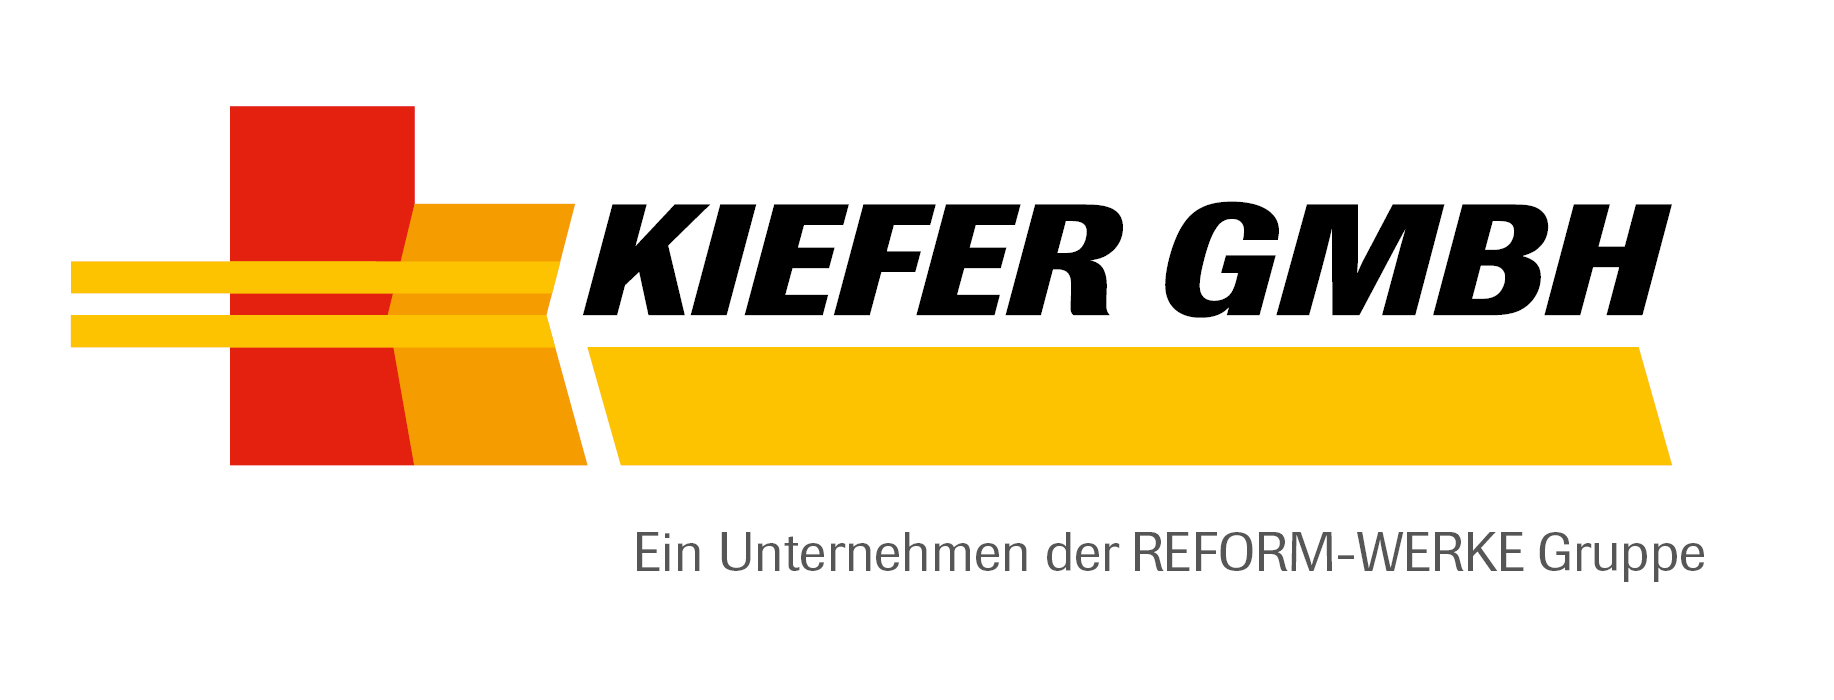 Kiefer Logo 2015 U der REFORMGruppe